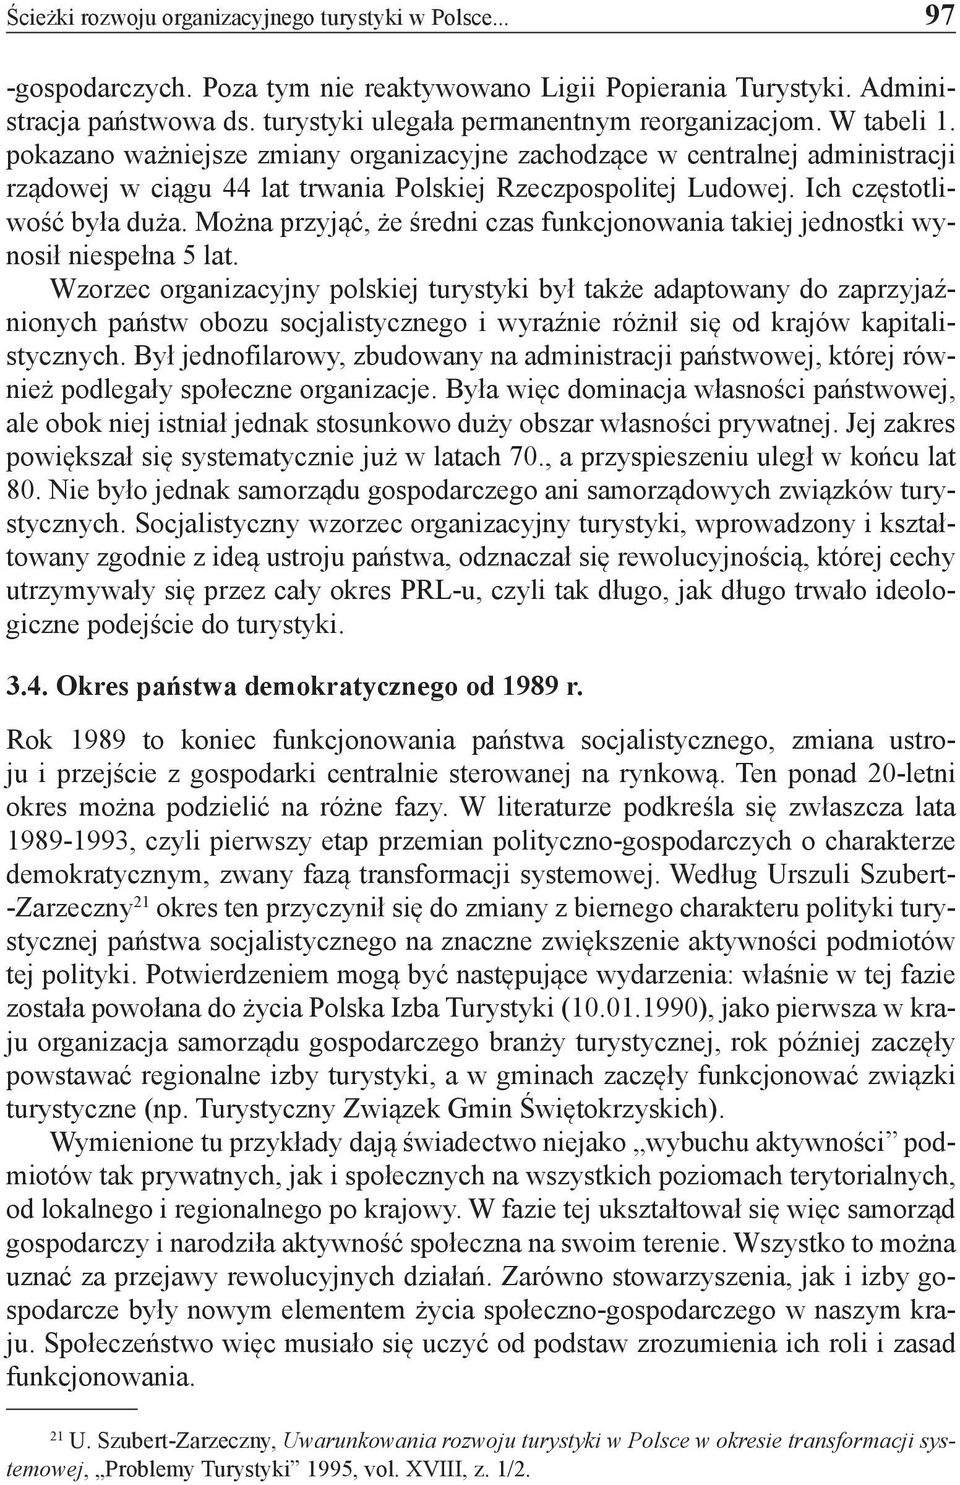 pokazano ważniejsze zmiany organizacyjne zachodzące w centralnej administracji rządowej w ciągu 44 lat trwania Polskiej Rzeczpospolitej Ludowej. Ich częstotliwość była duża.